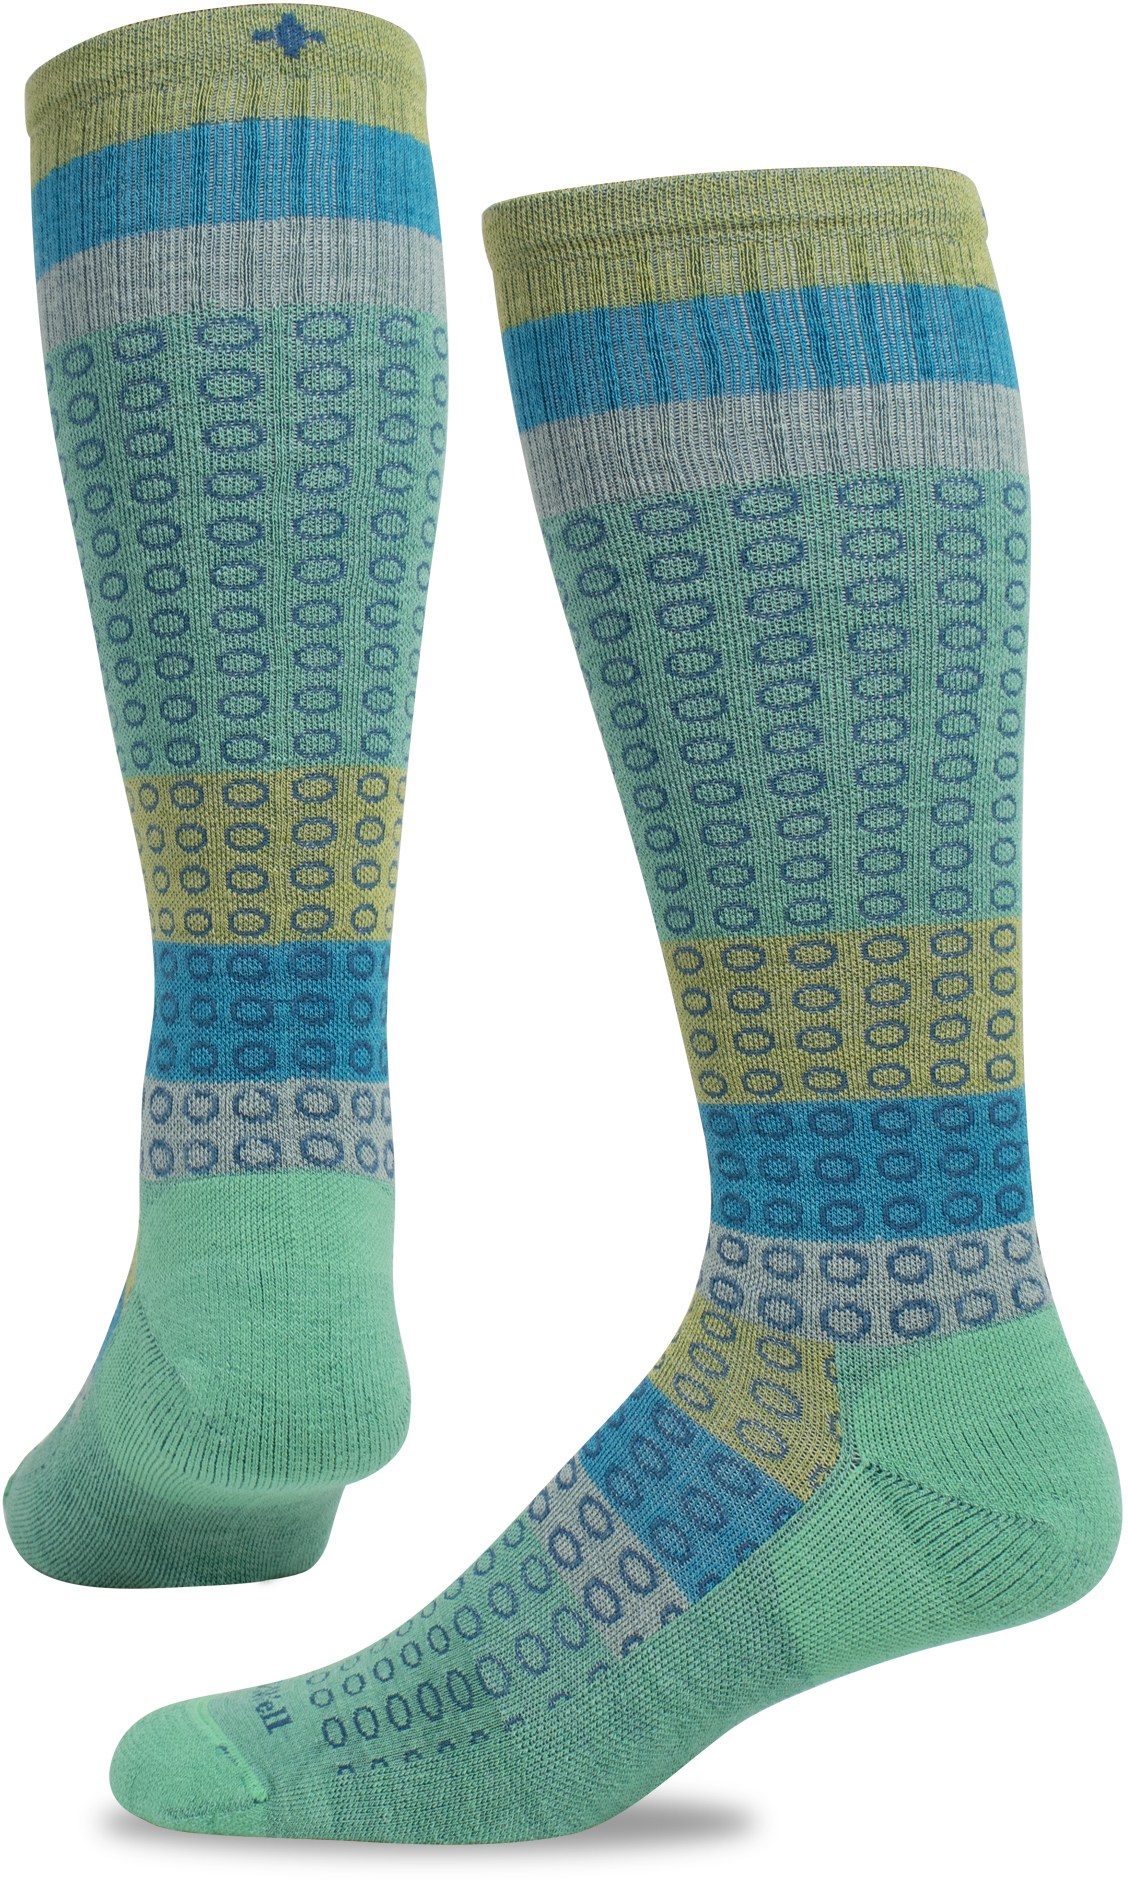 цена Компрессионные носки полного круга, широкие по размеру икры, женские Sockwell, зеленый